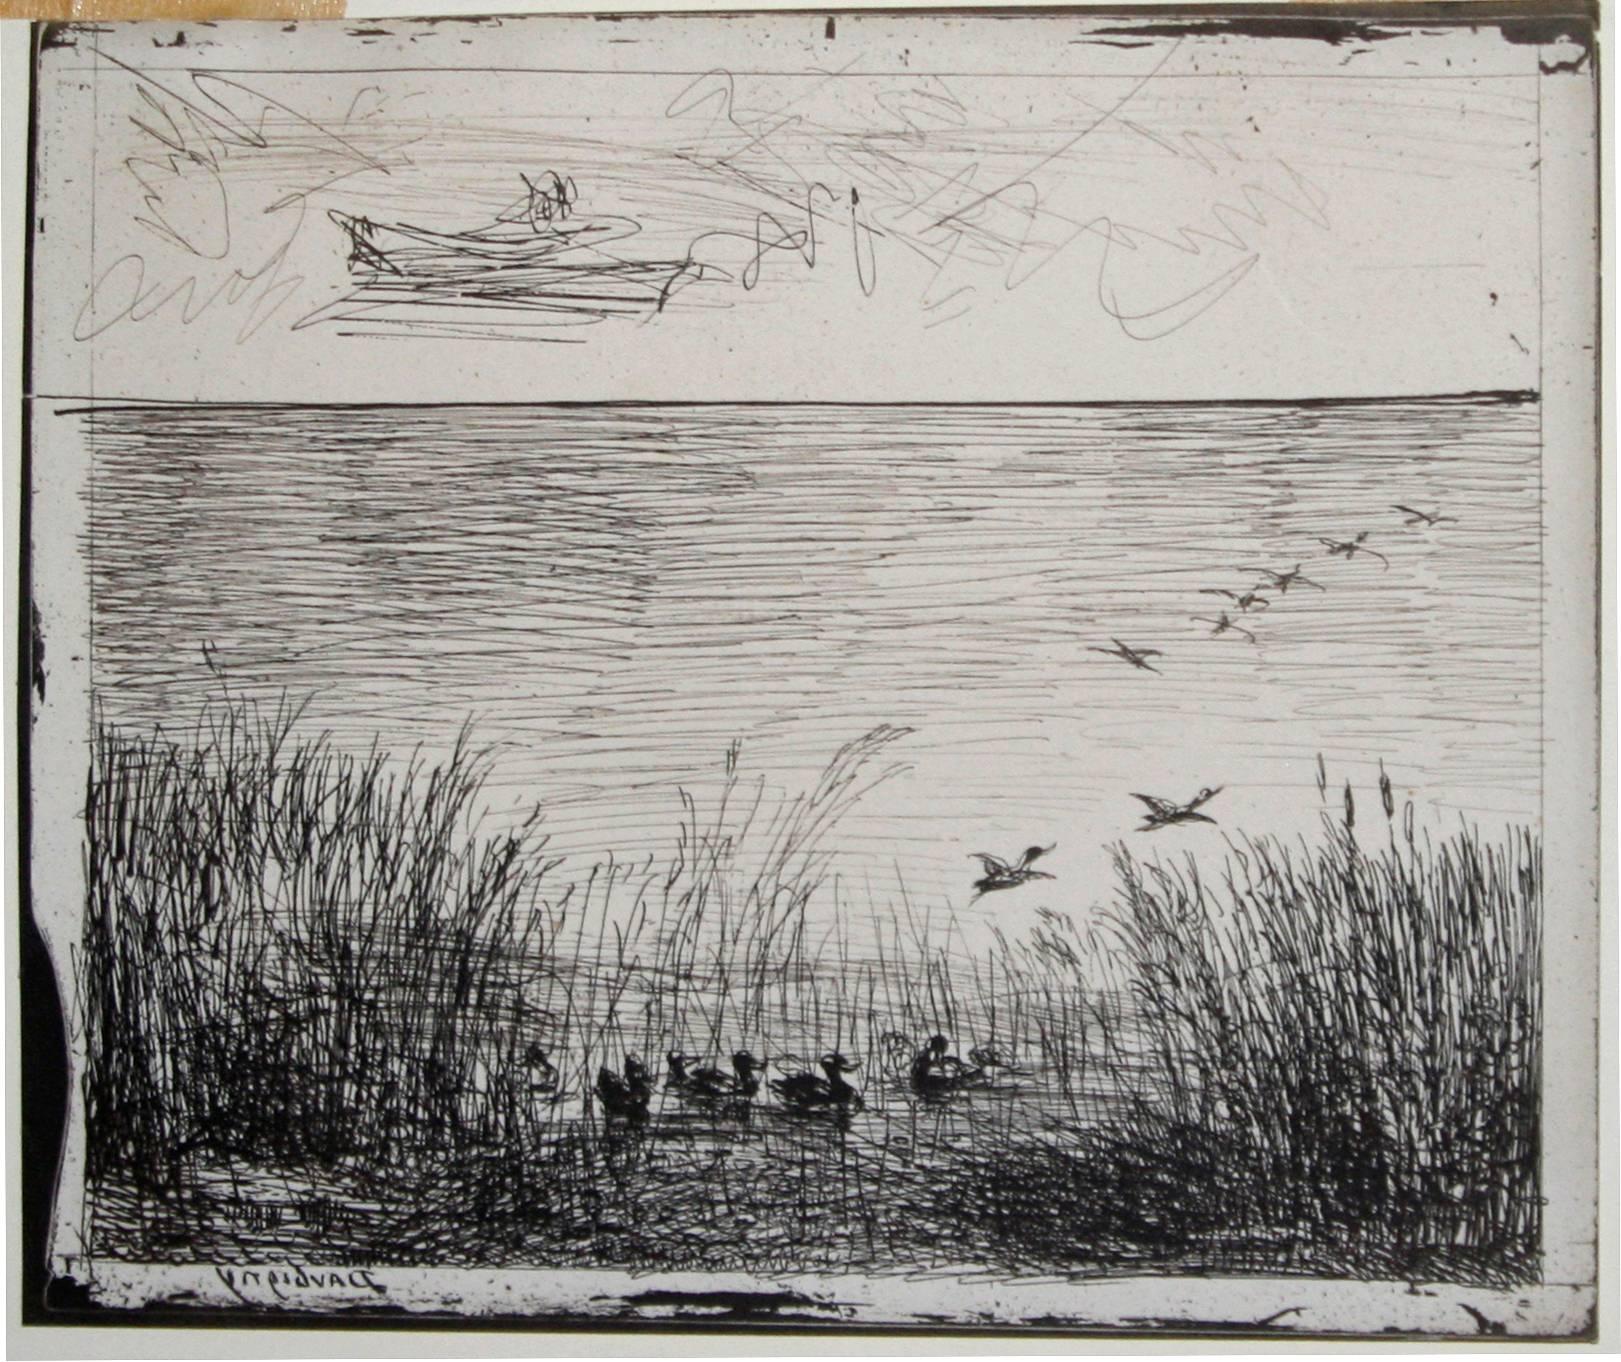 Le marais aux canards (Marsh with Ducks). - Photograph by Charles François Daubigny